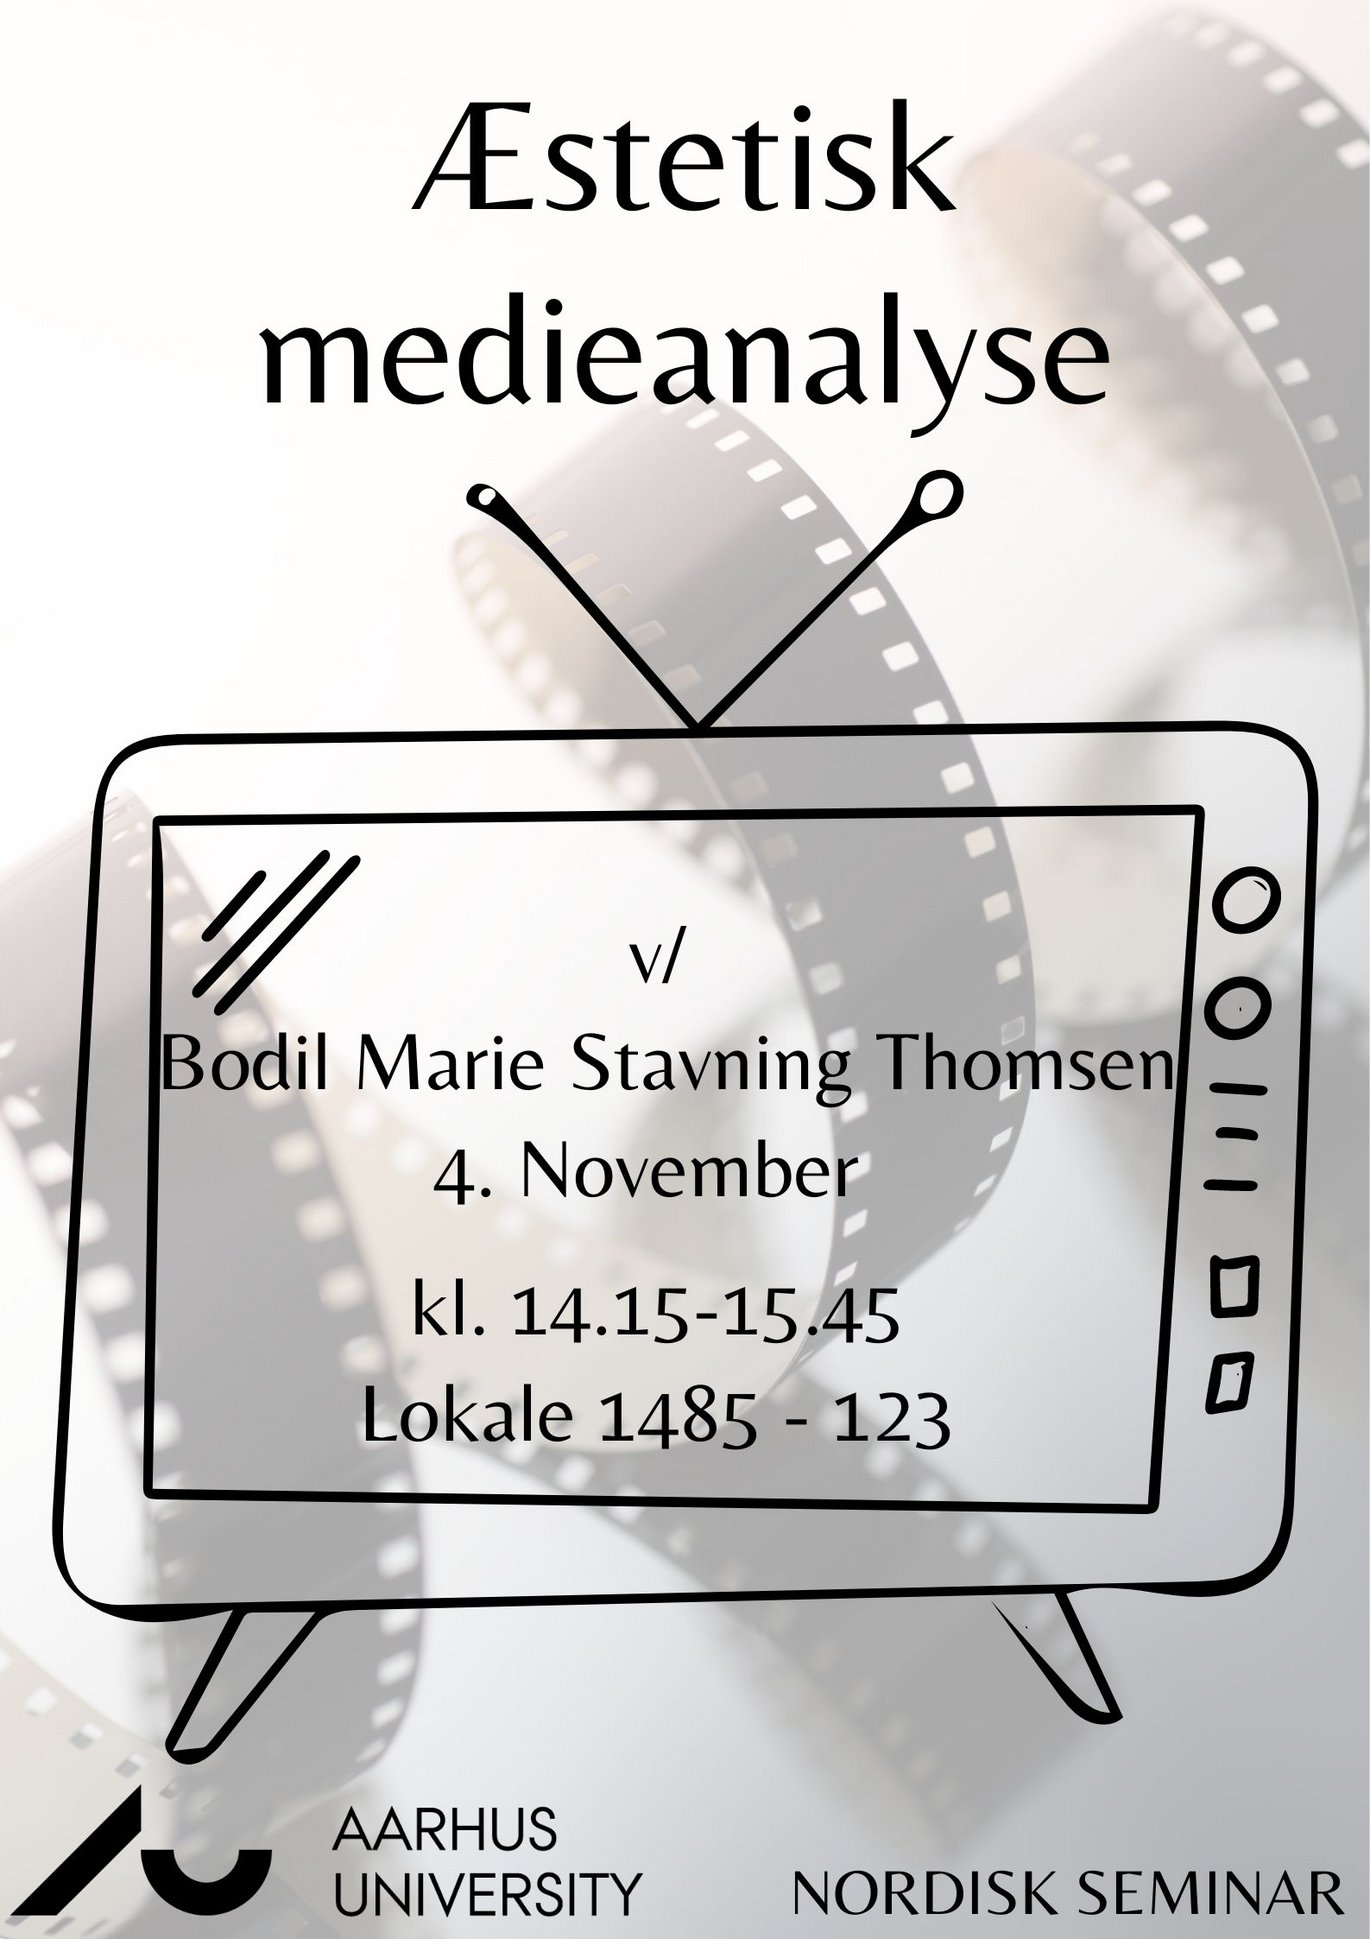 Plakat for Nordisk Seminar: Æstetisk medieanalyse ved Bodil Marie Stavning Thomsen. 4. november, klokken 14:15-16:00, lokale 1485-123.